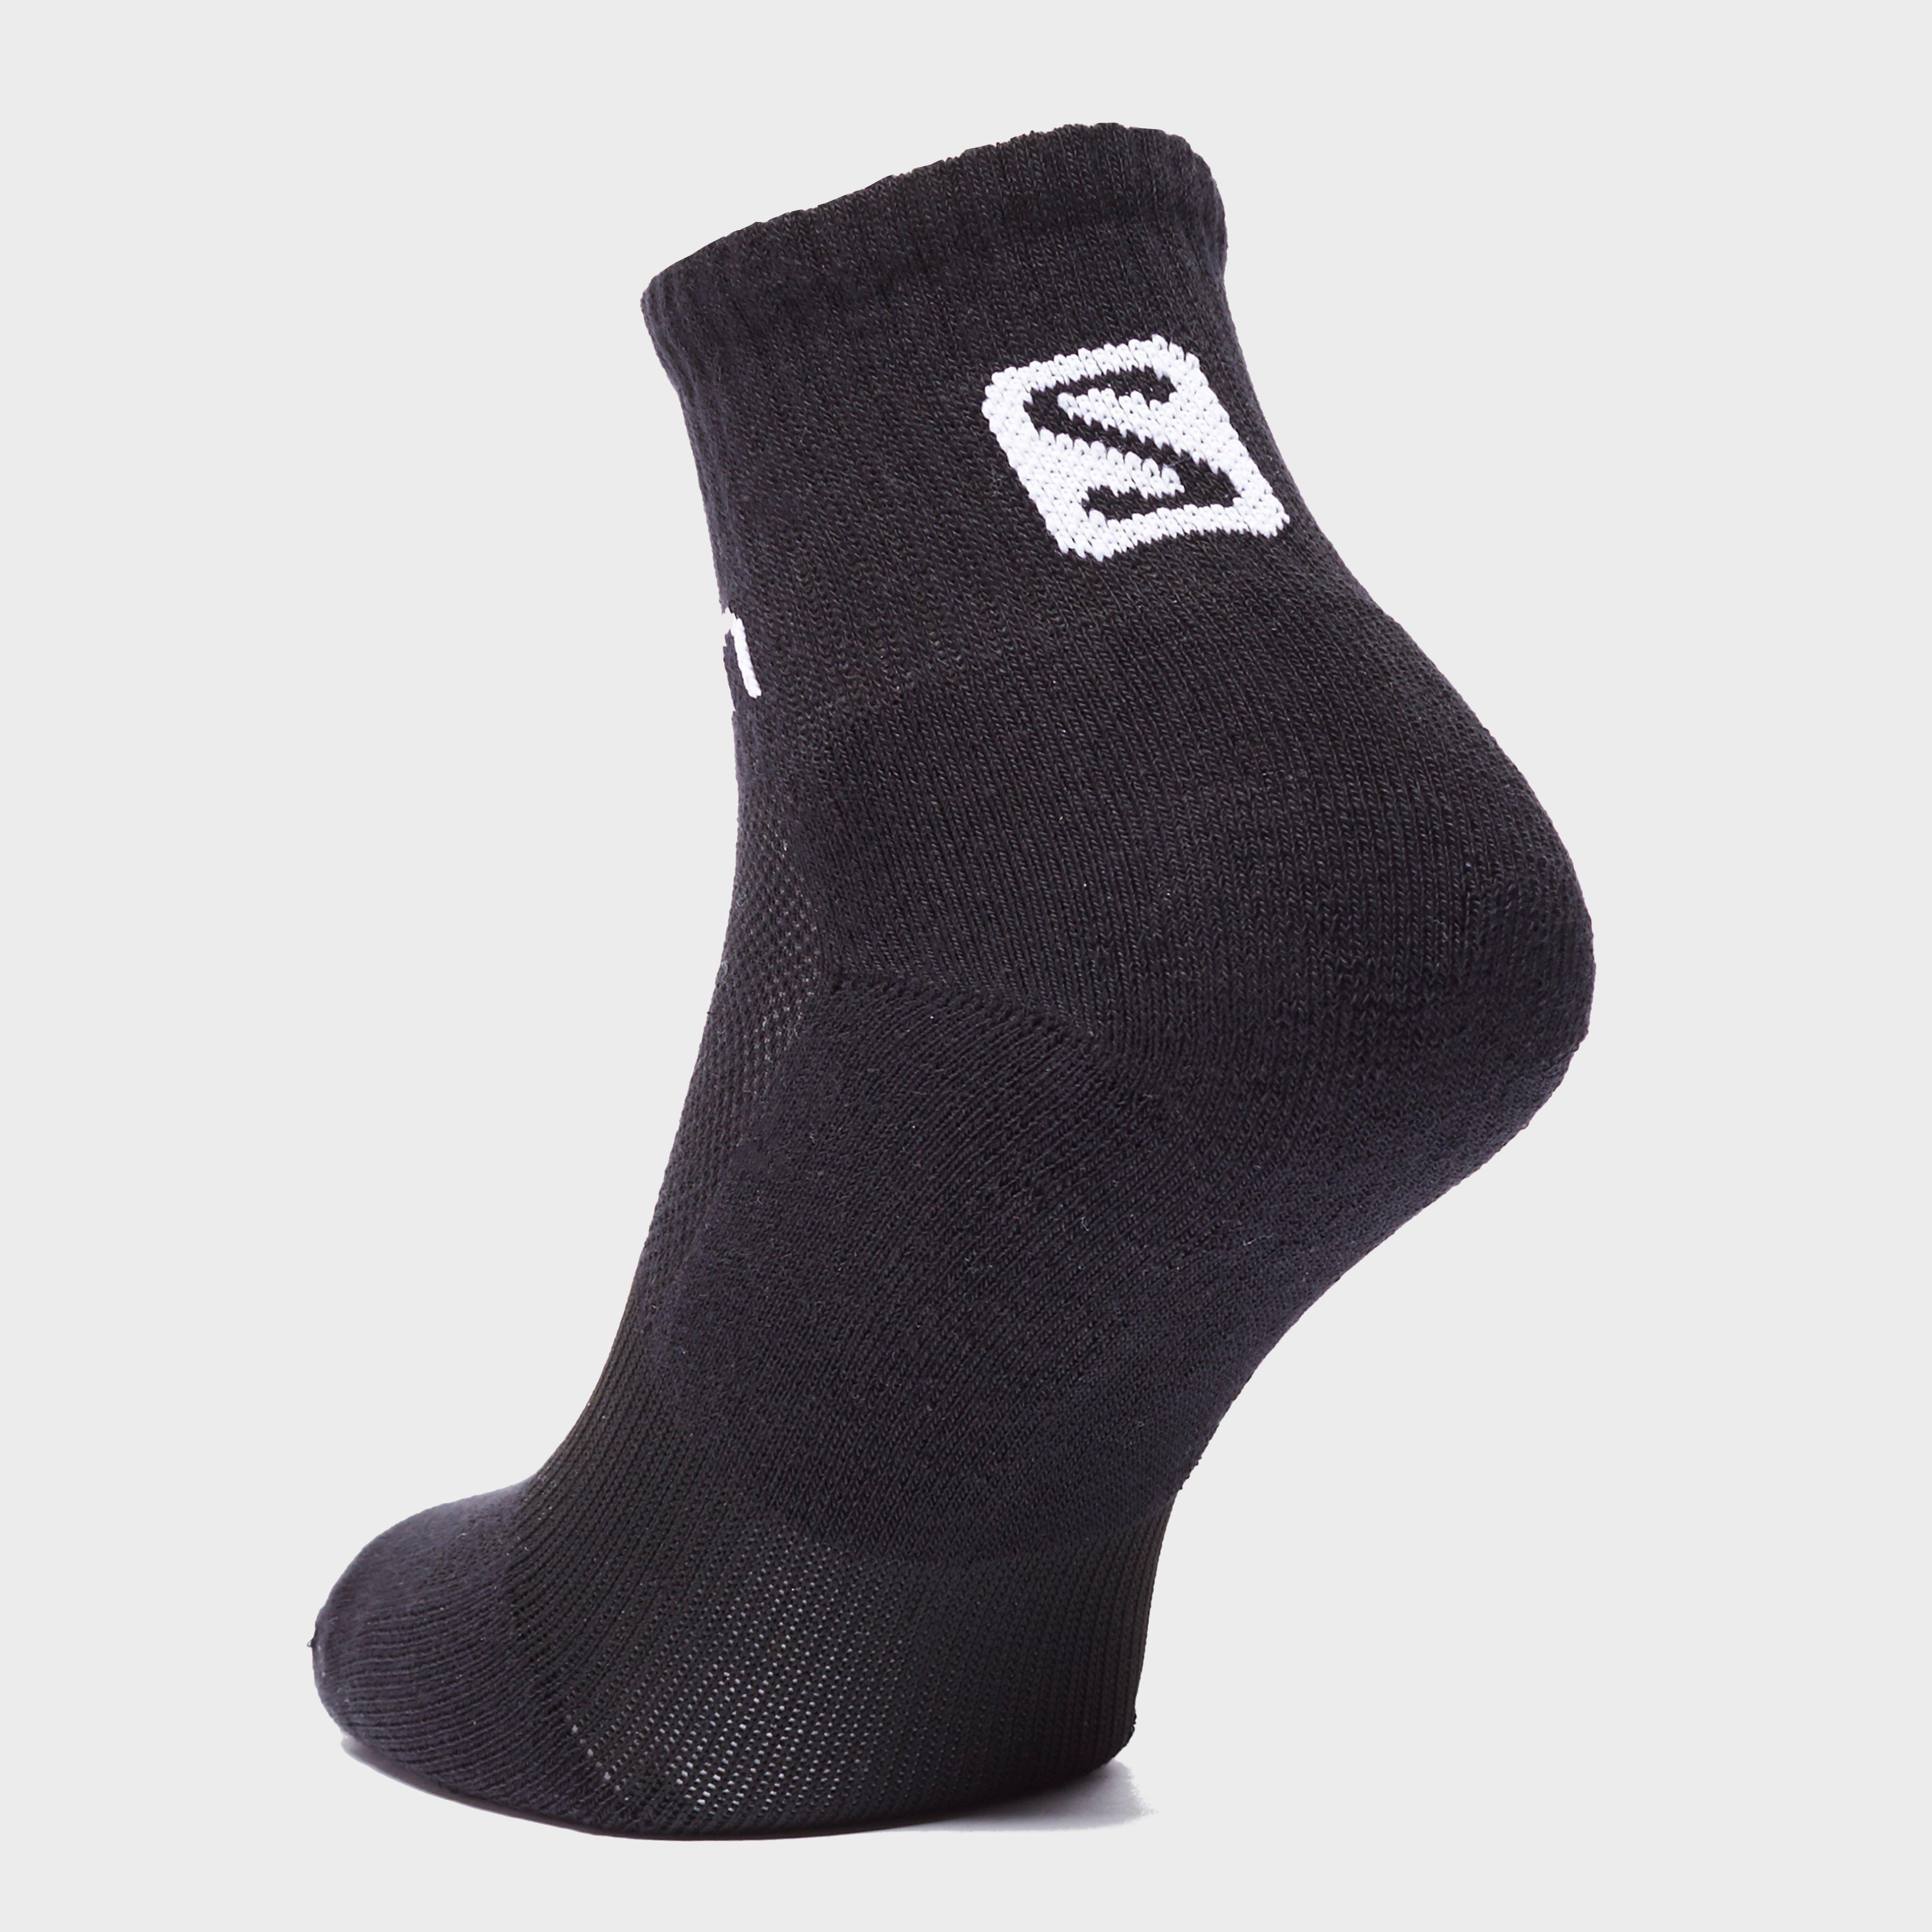 Salomon Mens' 2 Pack Evasion Socks Review